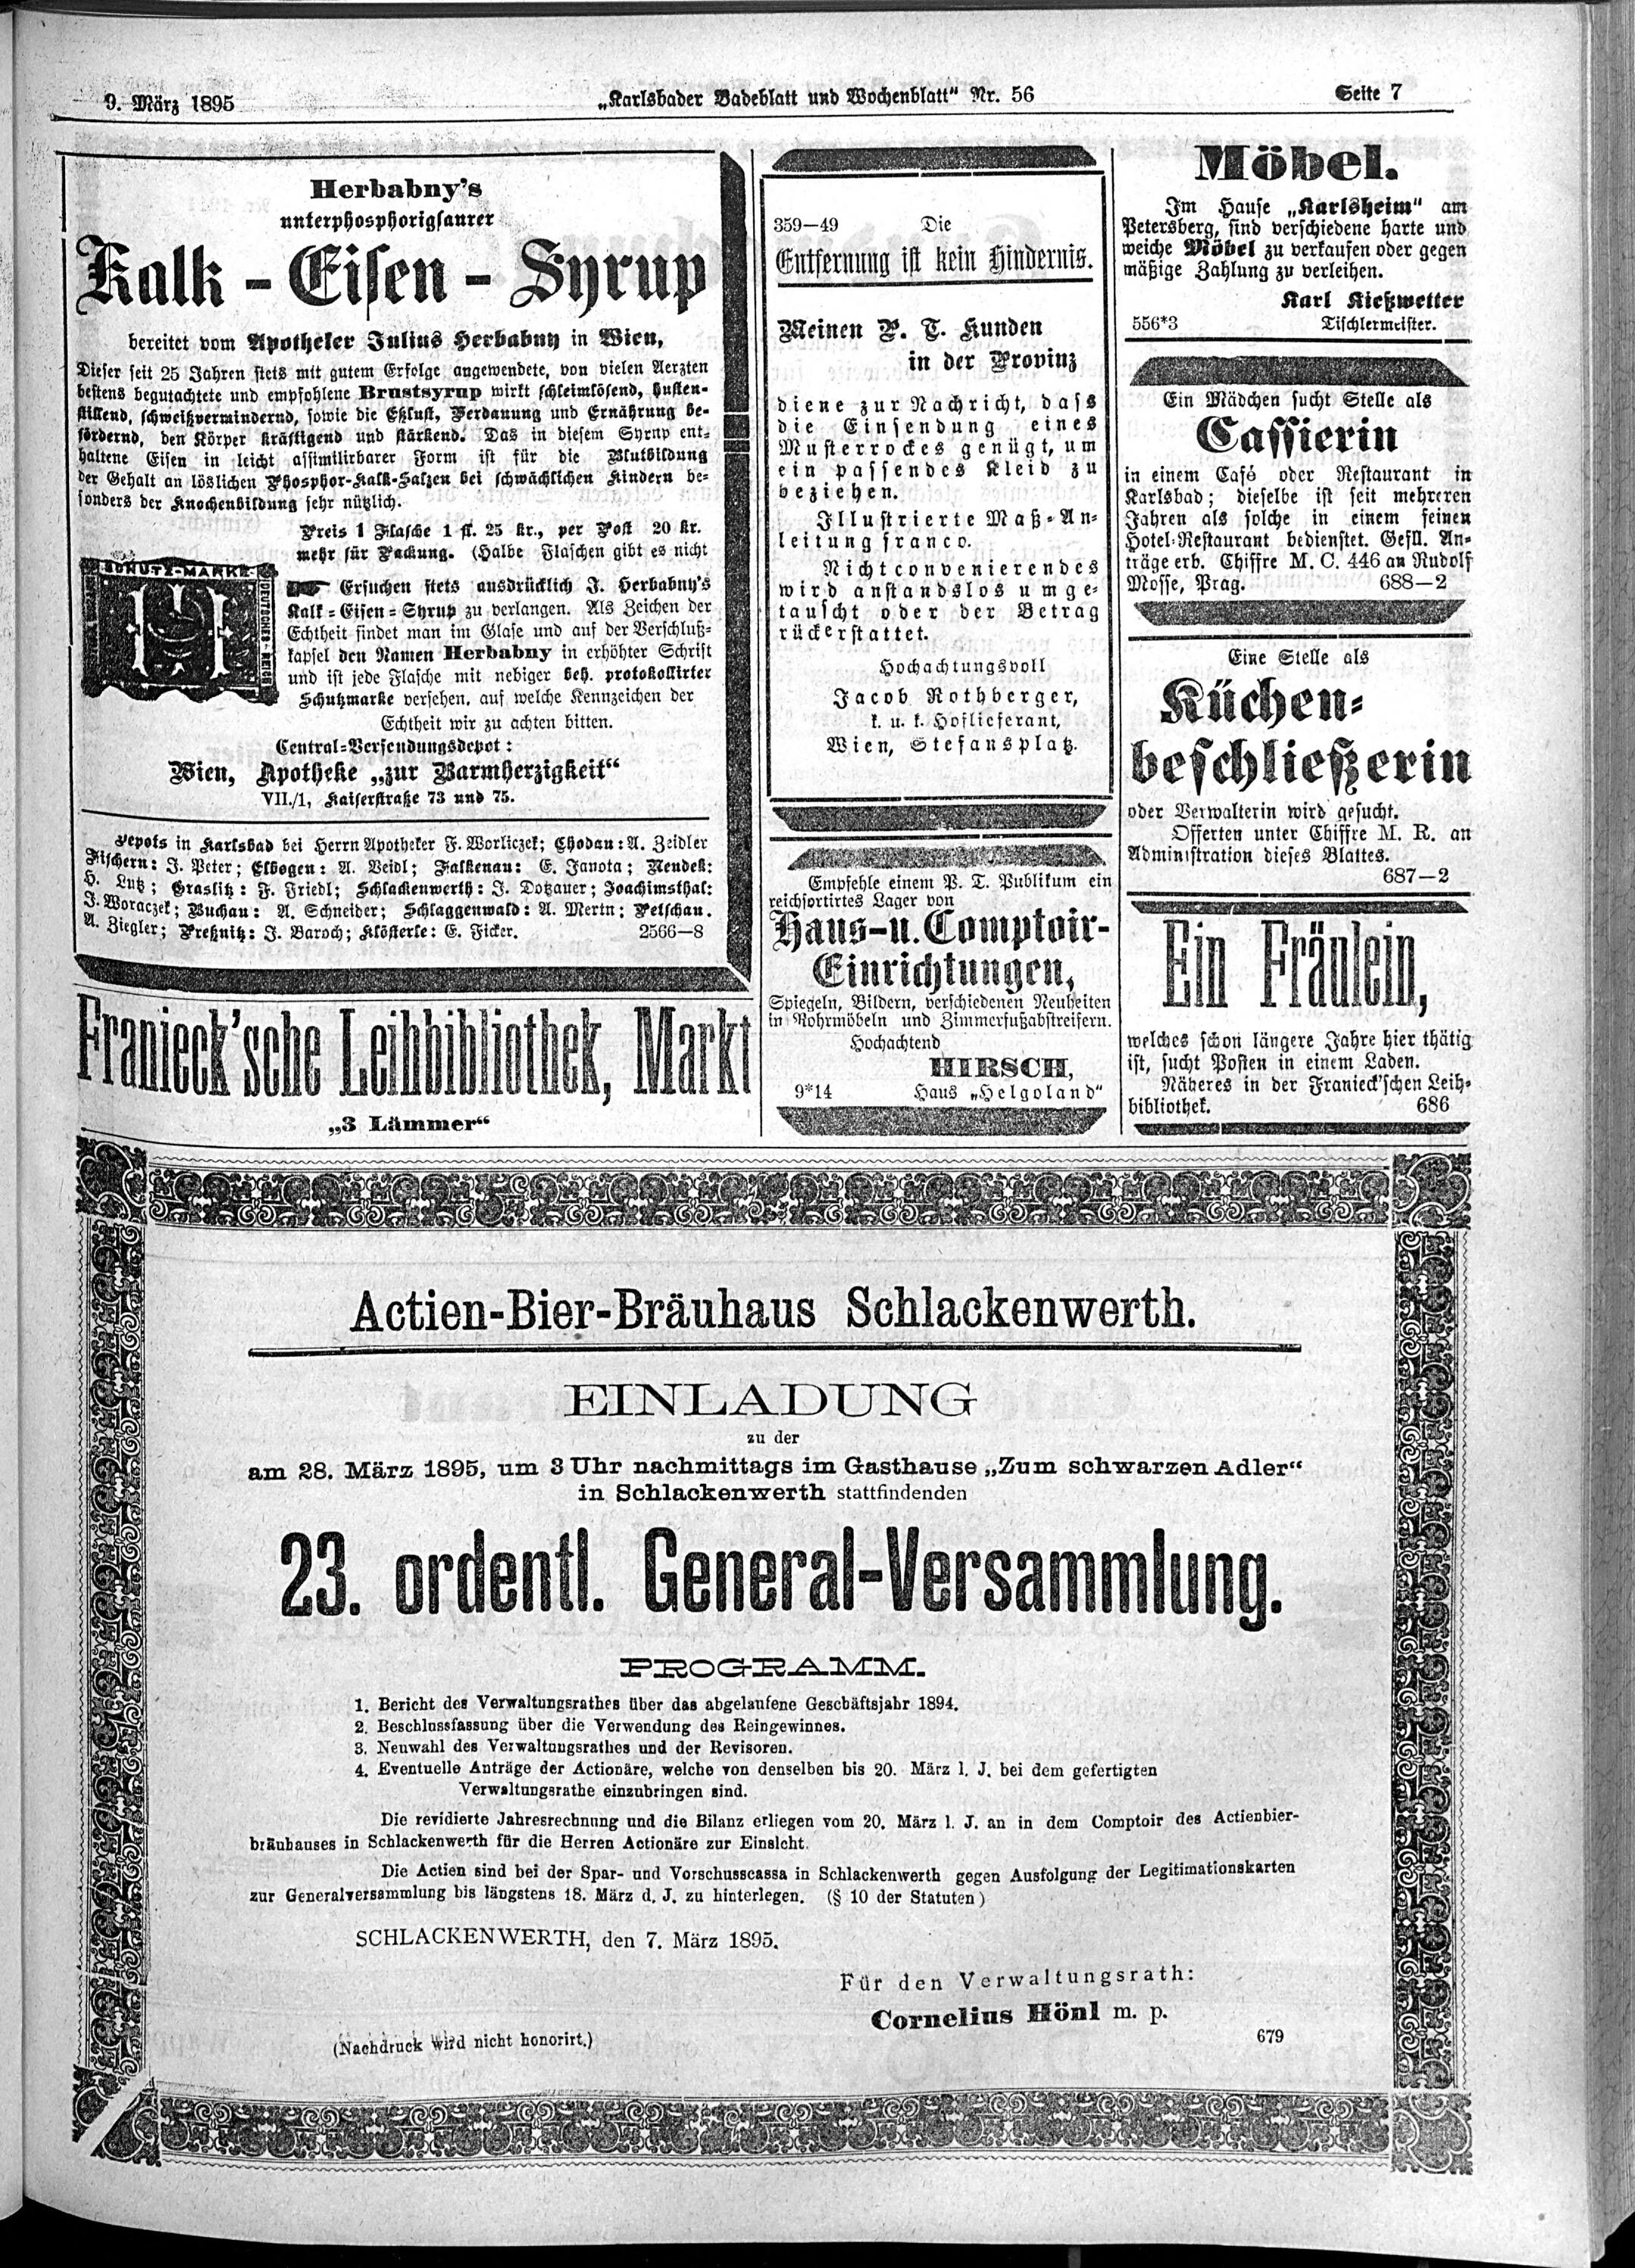 7. karlsbader-badeblatt-1895-03-09-n56_2455